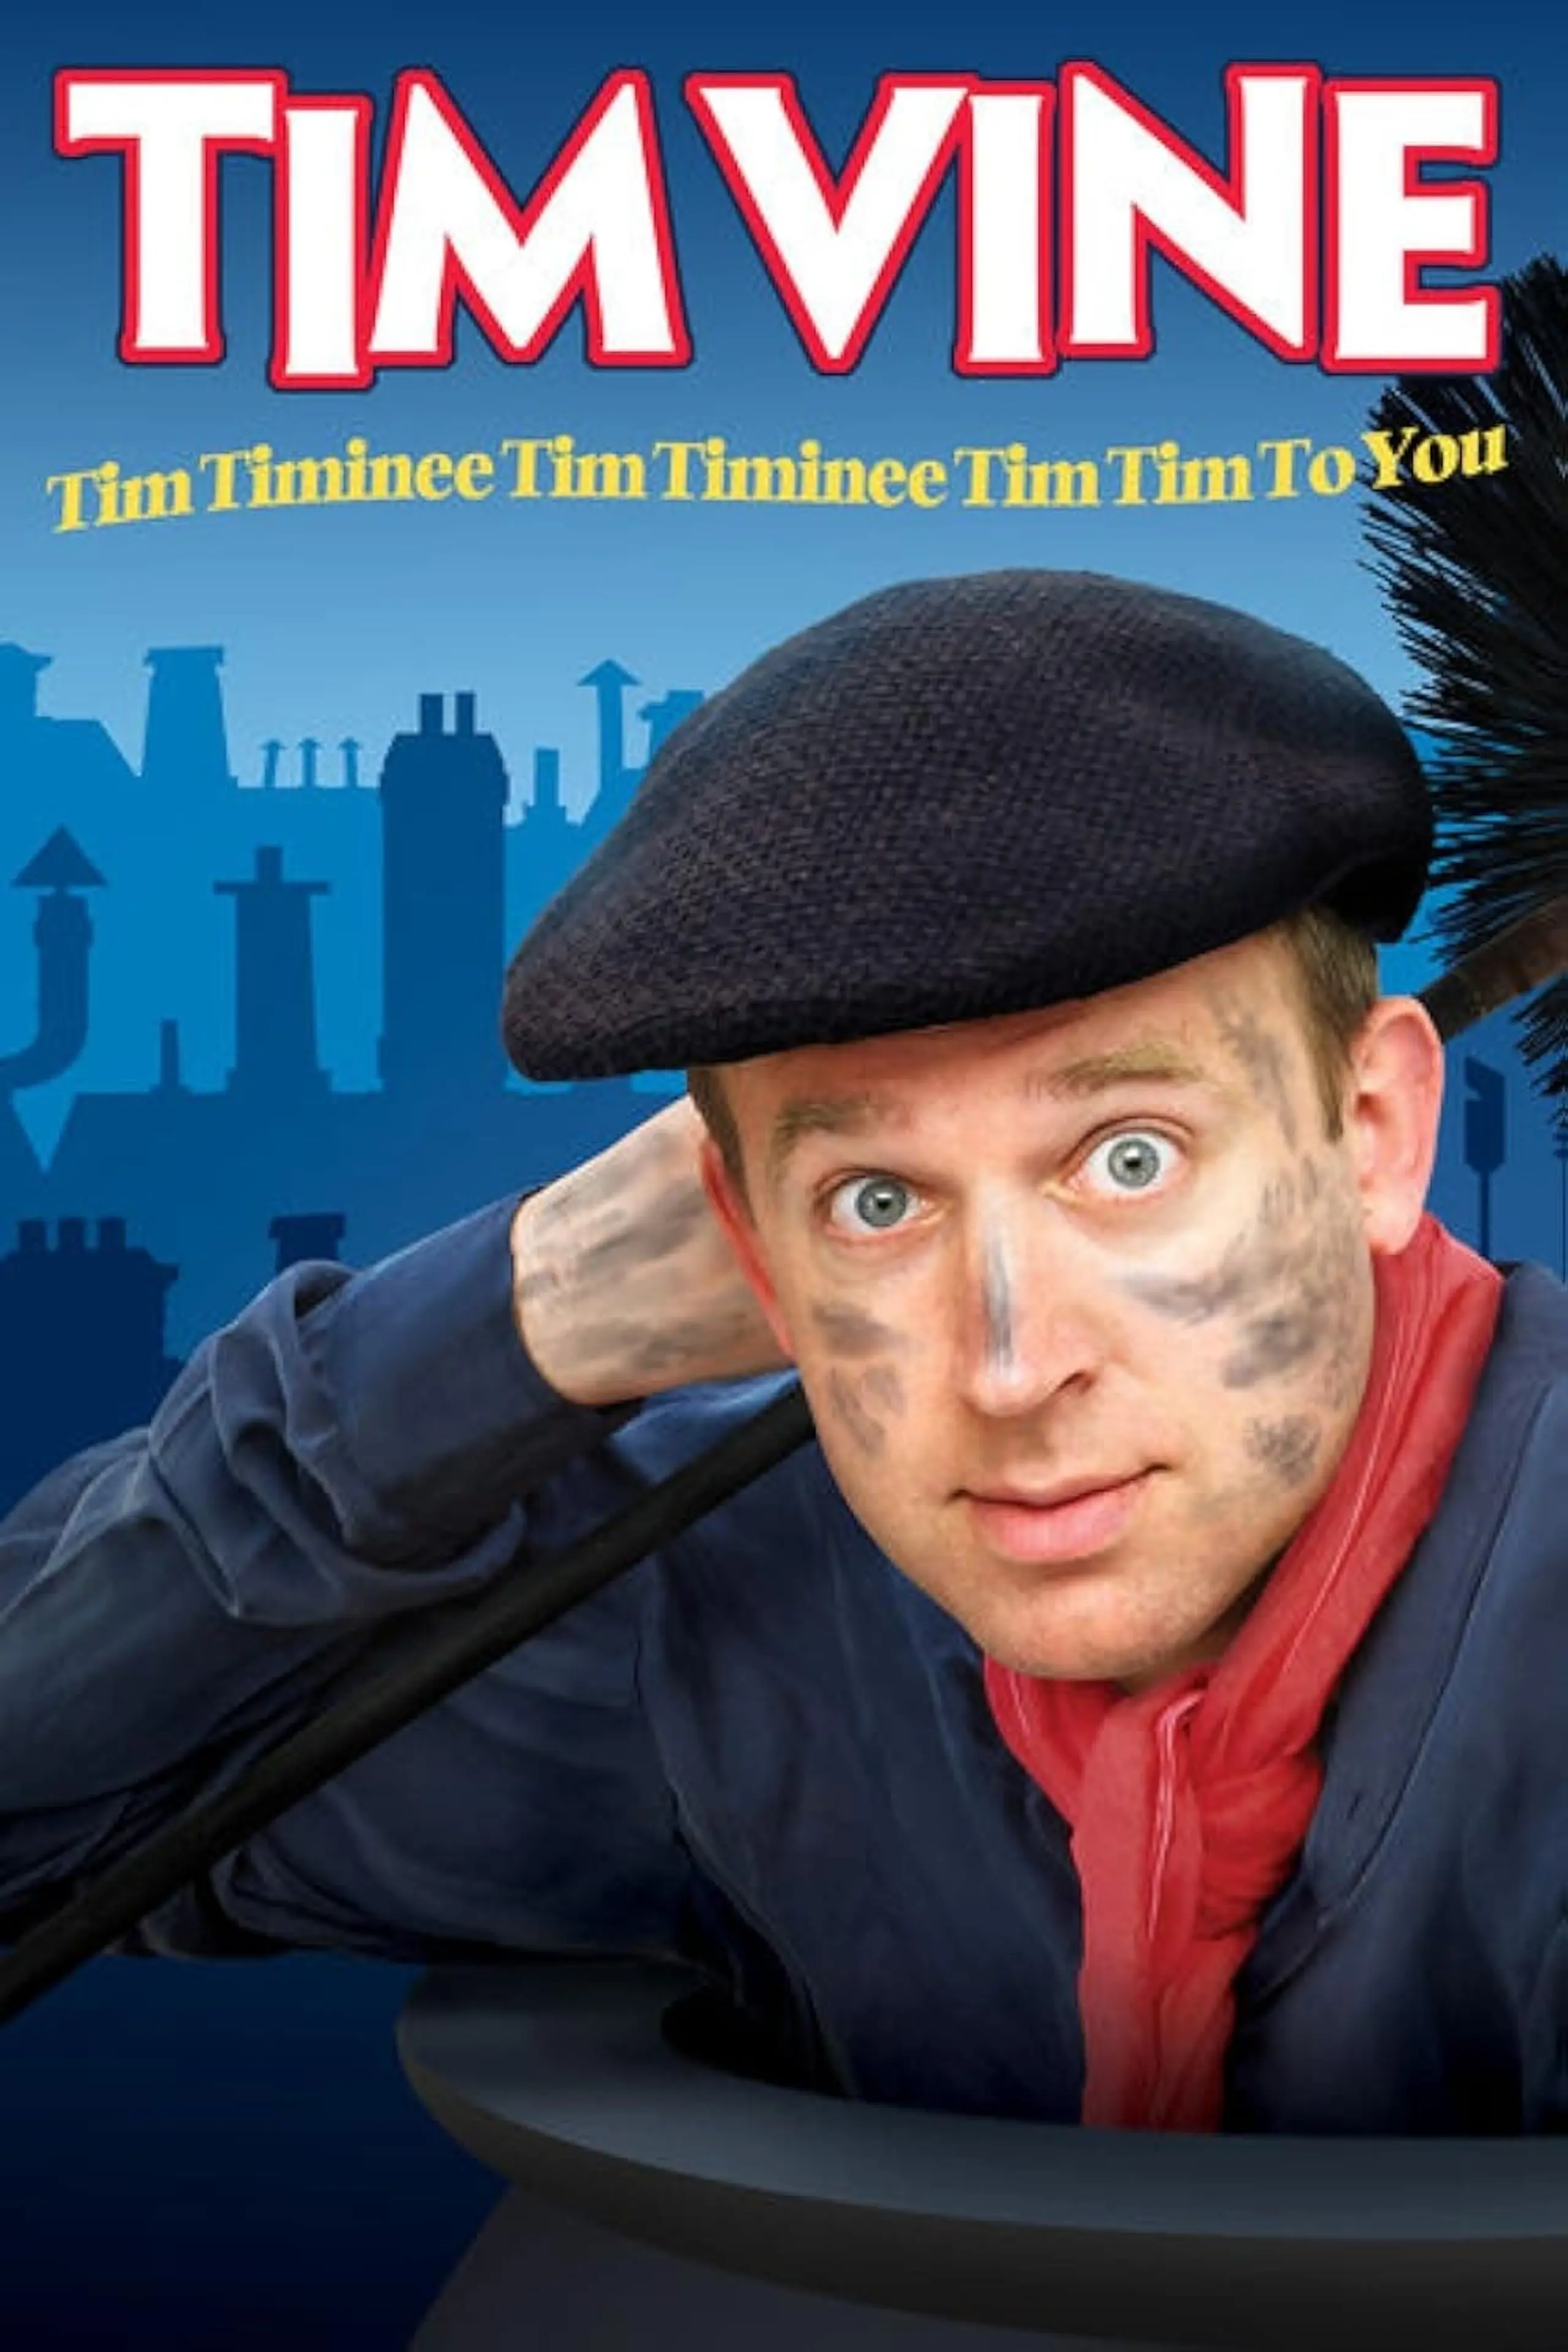 Tim Vine: Tim Timinee Tim Timinee Tim Tim to You